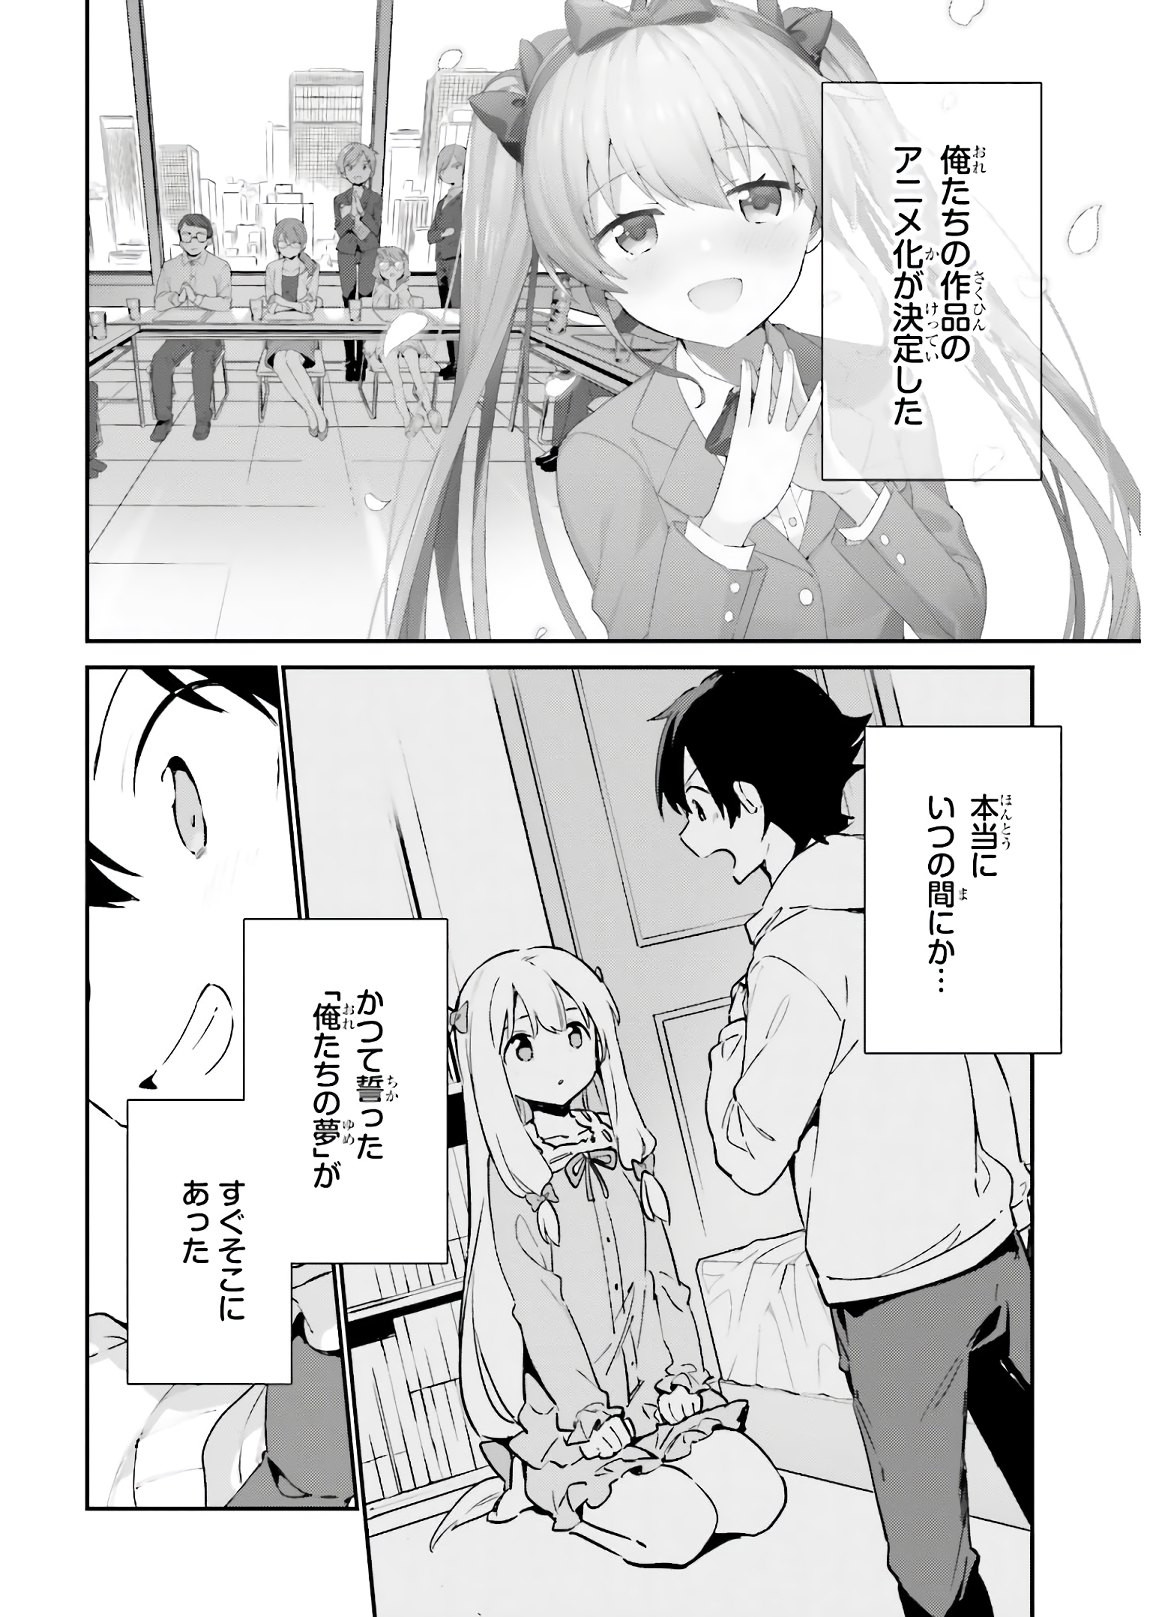 Ero Manga Sensei - Chapter 74 - Page 2